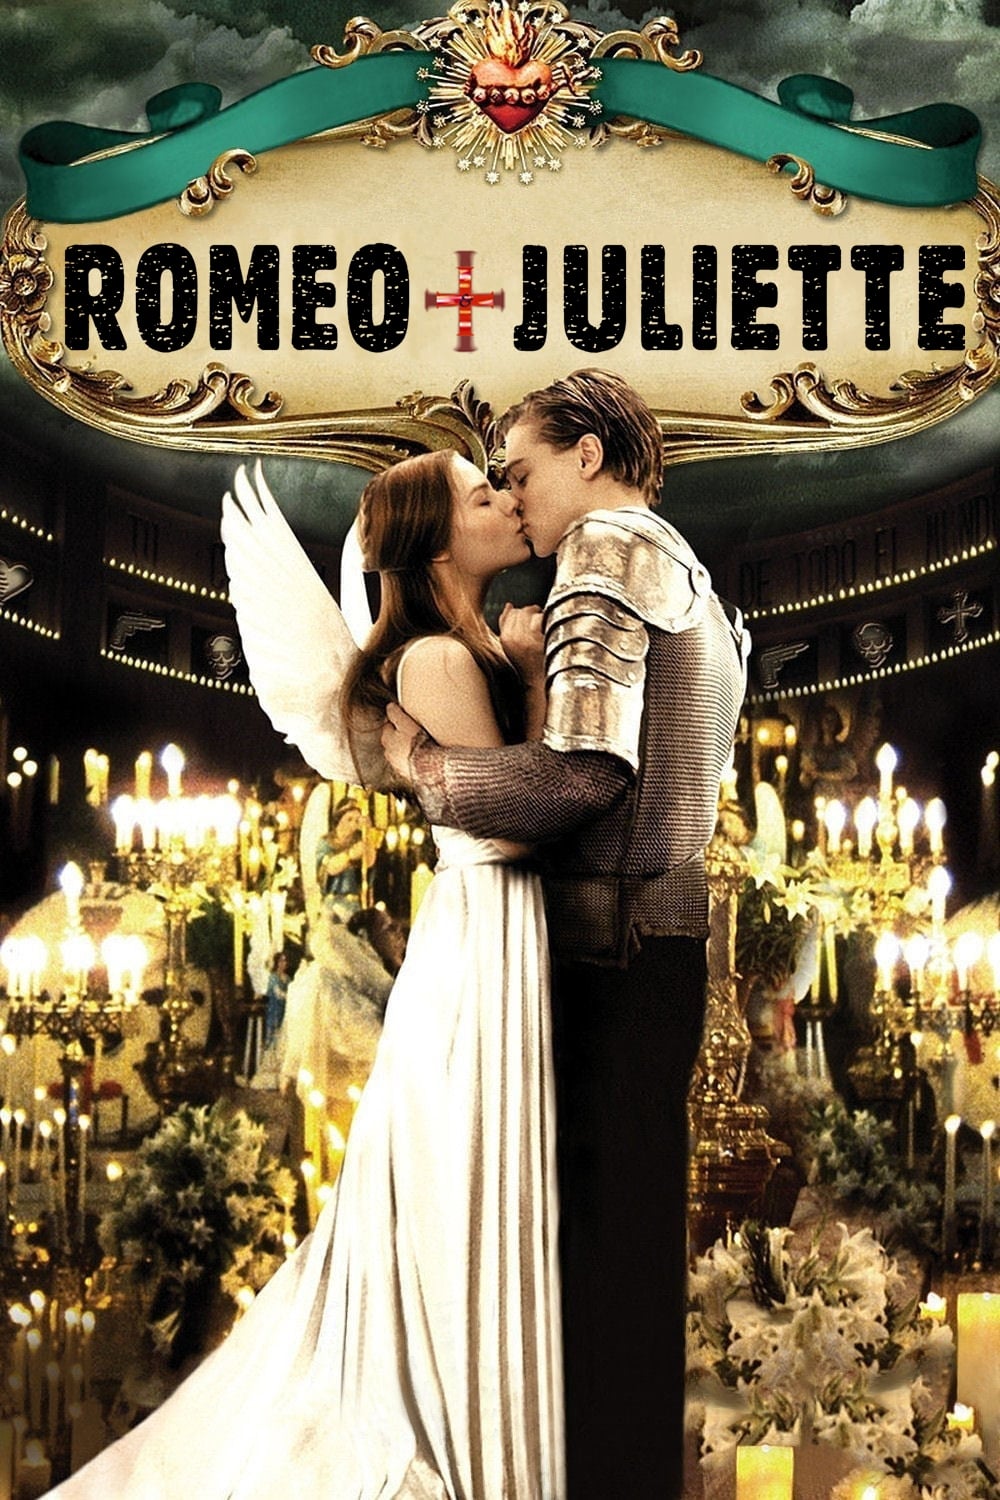 Roméo + Juliette estil disponible sur Netflix et les plateformes de